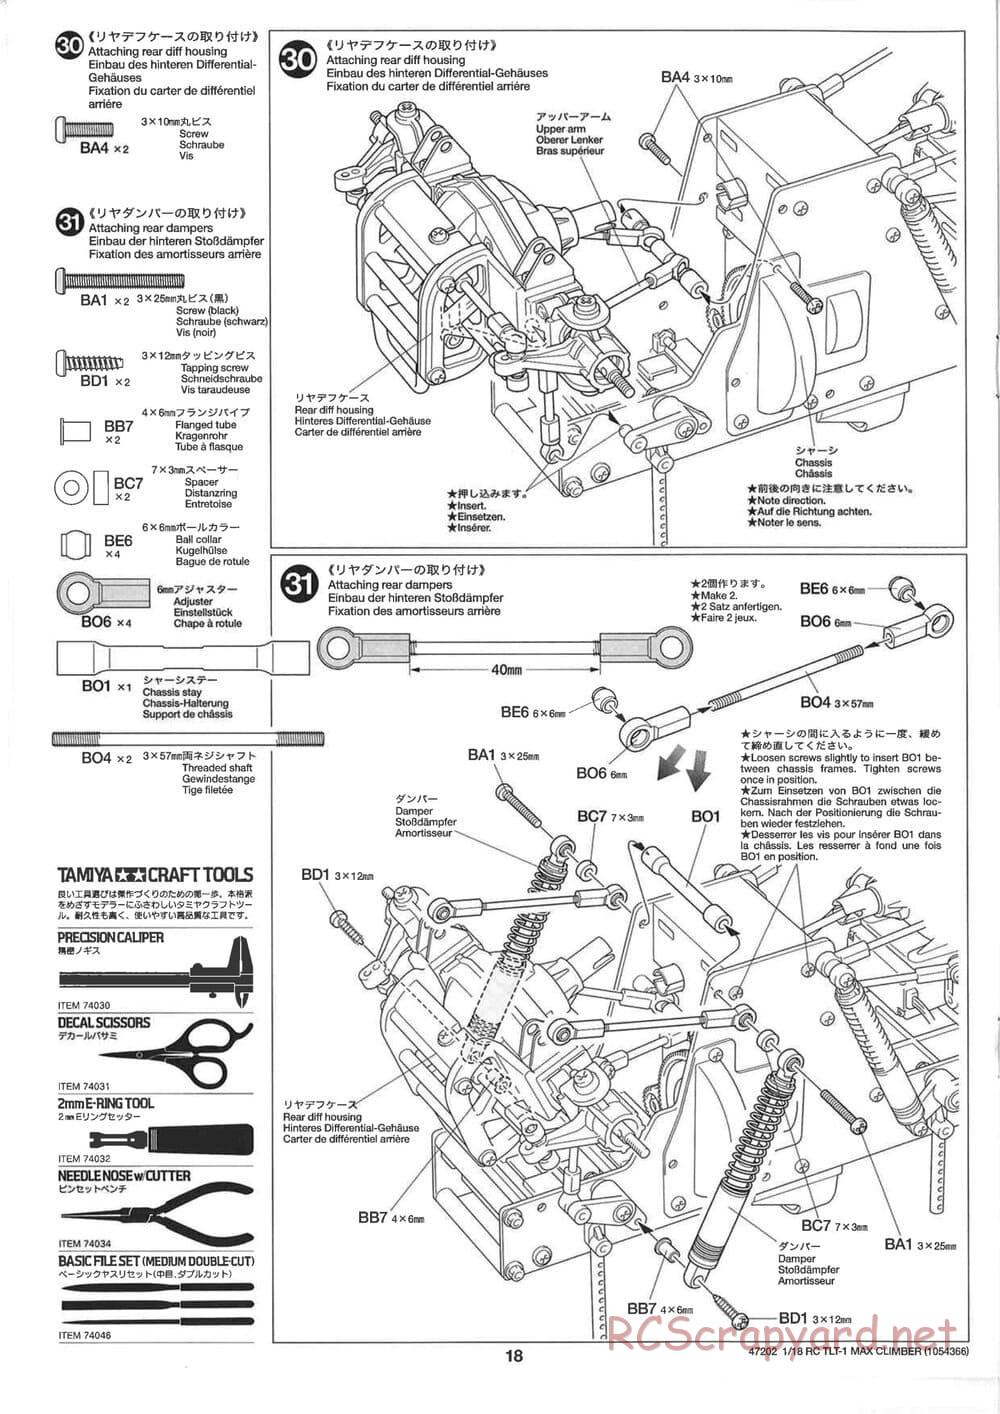 Tamiya - Max Climber - TLT-1 Chassis - Manual - Page 18